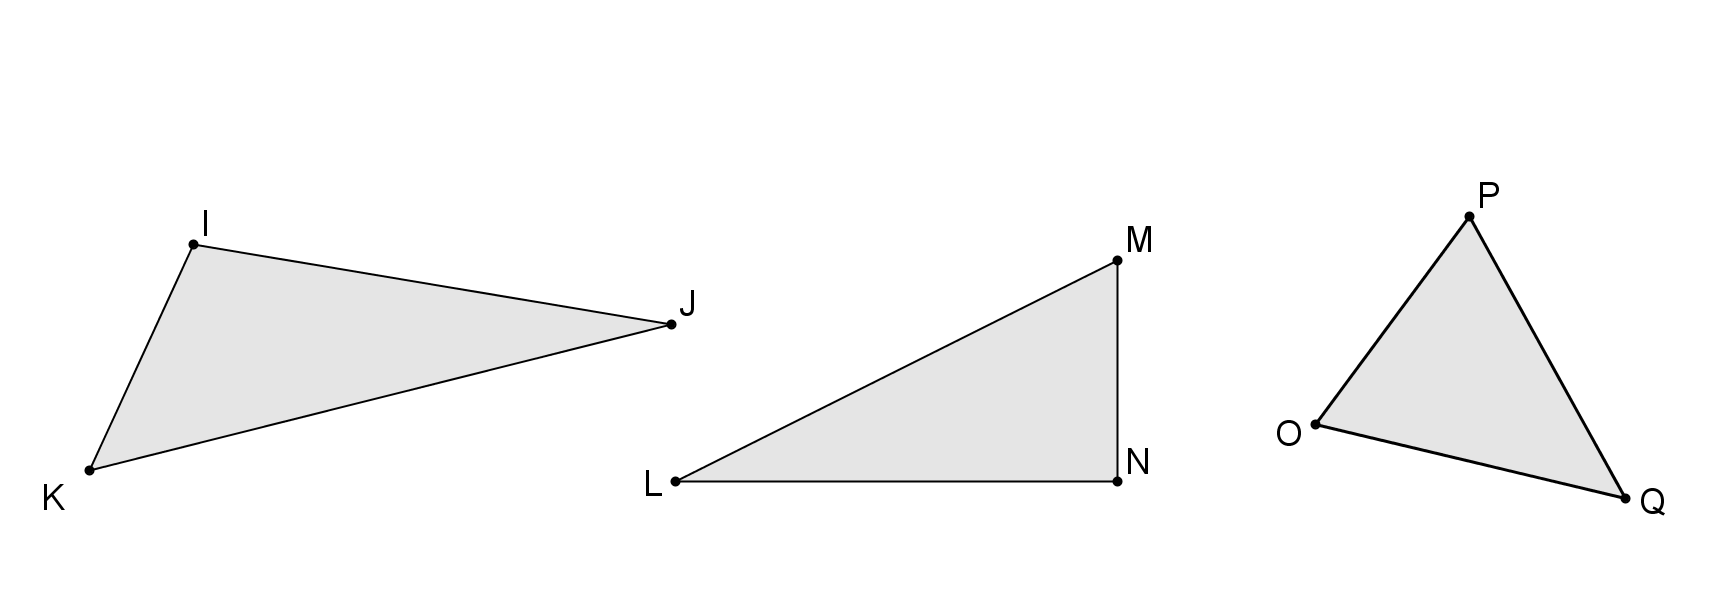 Výšky trojúhelníku výška je úsečka, jejímiž krajními body jsou a pata kolmice protější strany